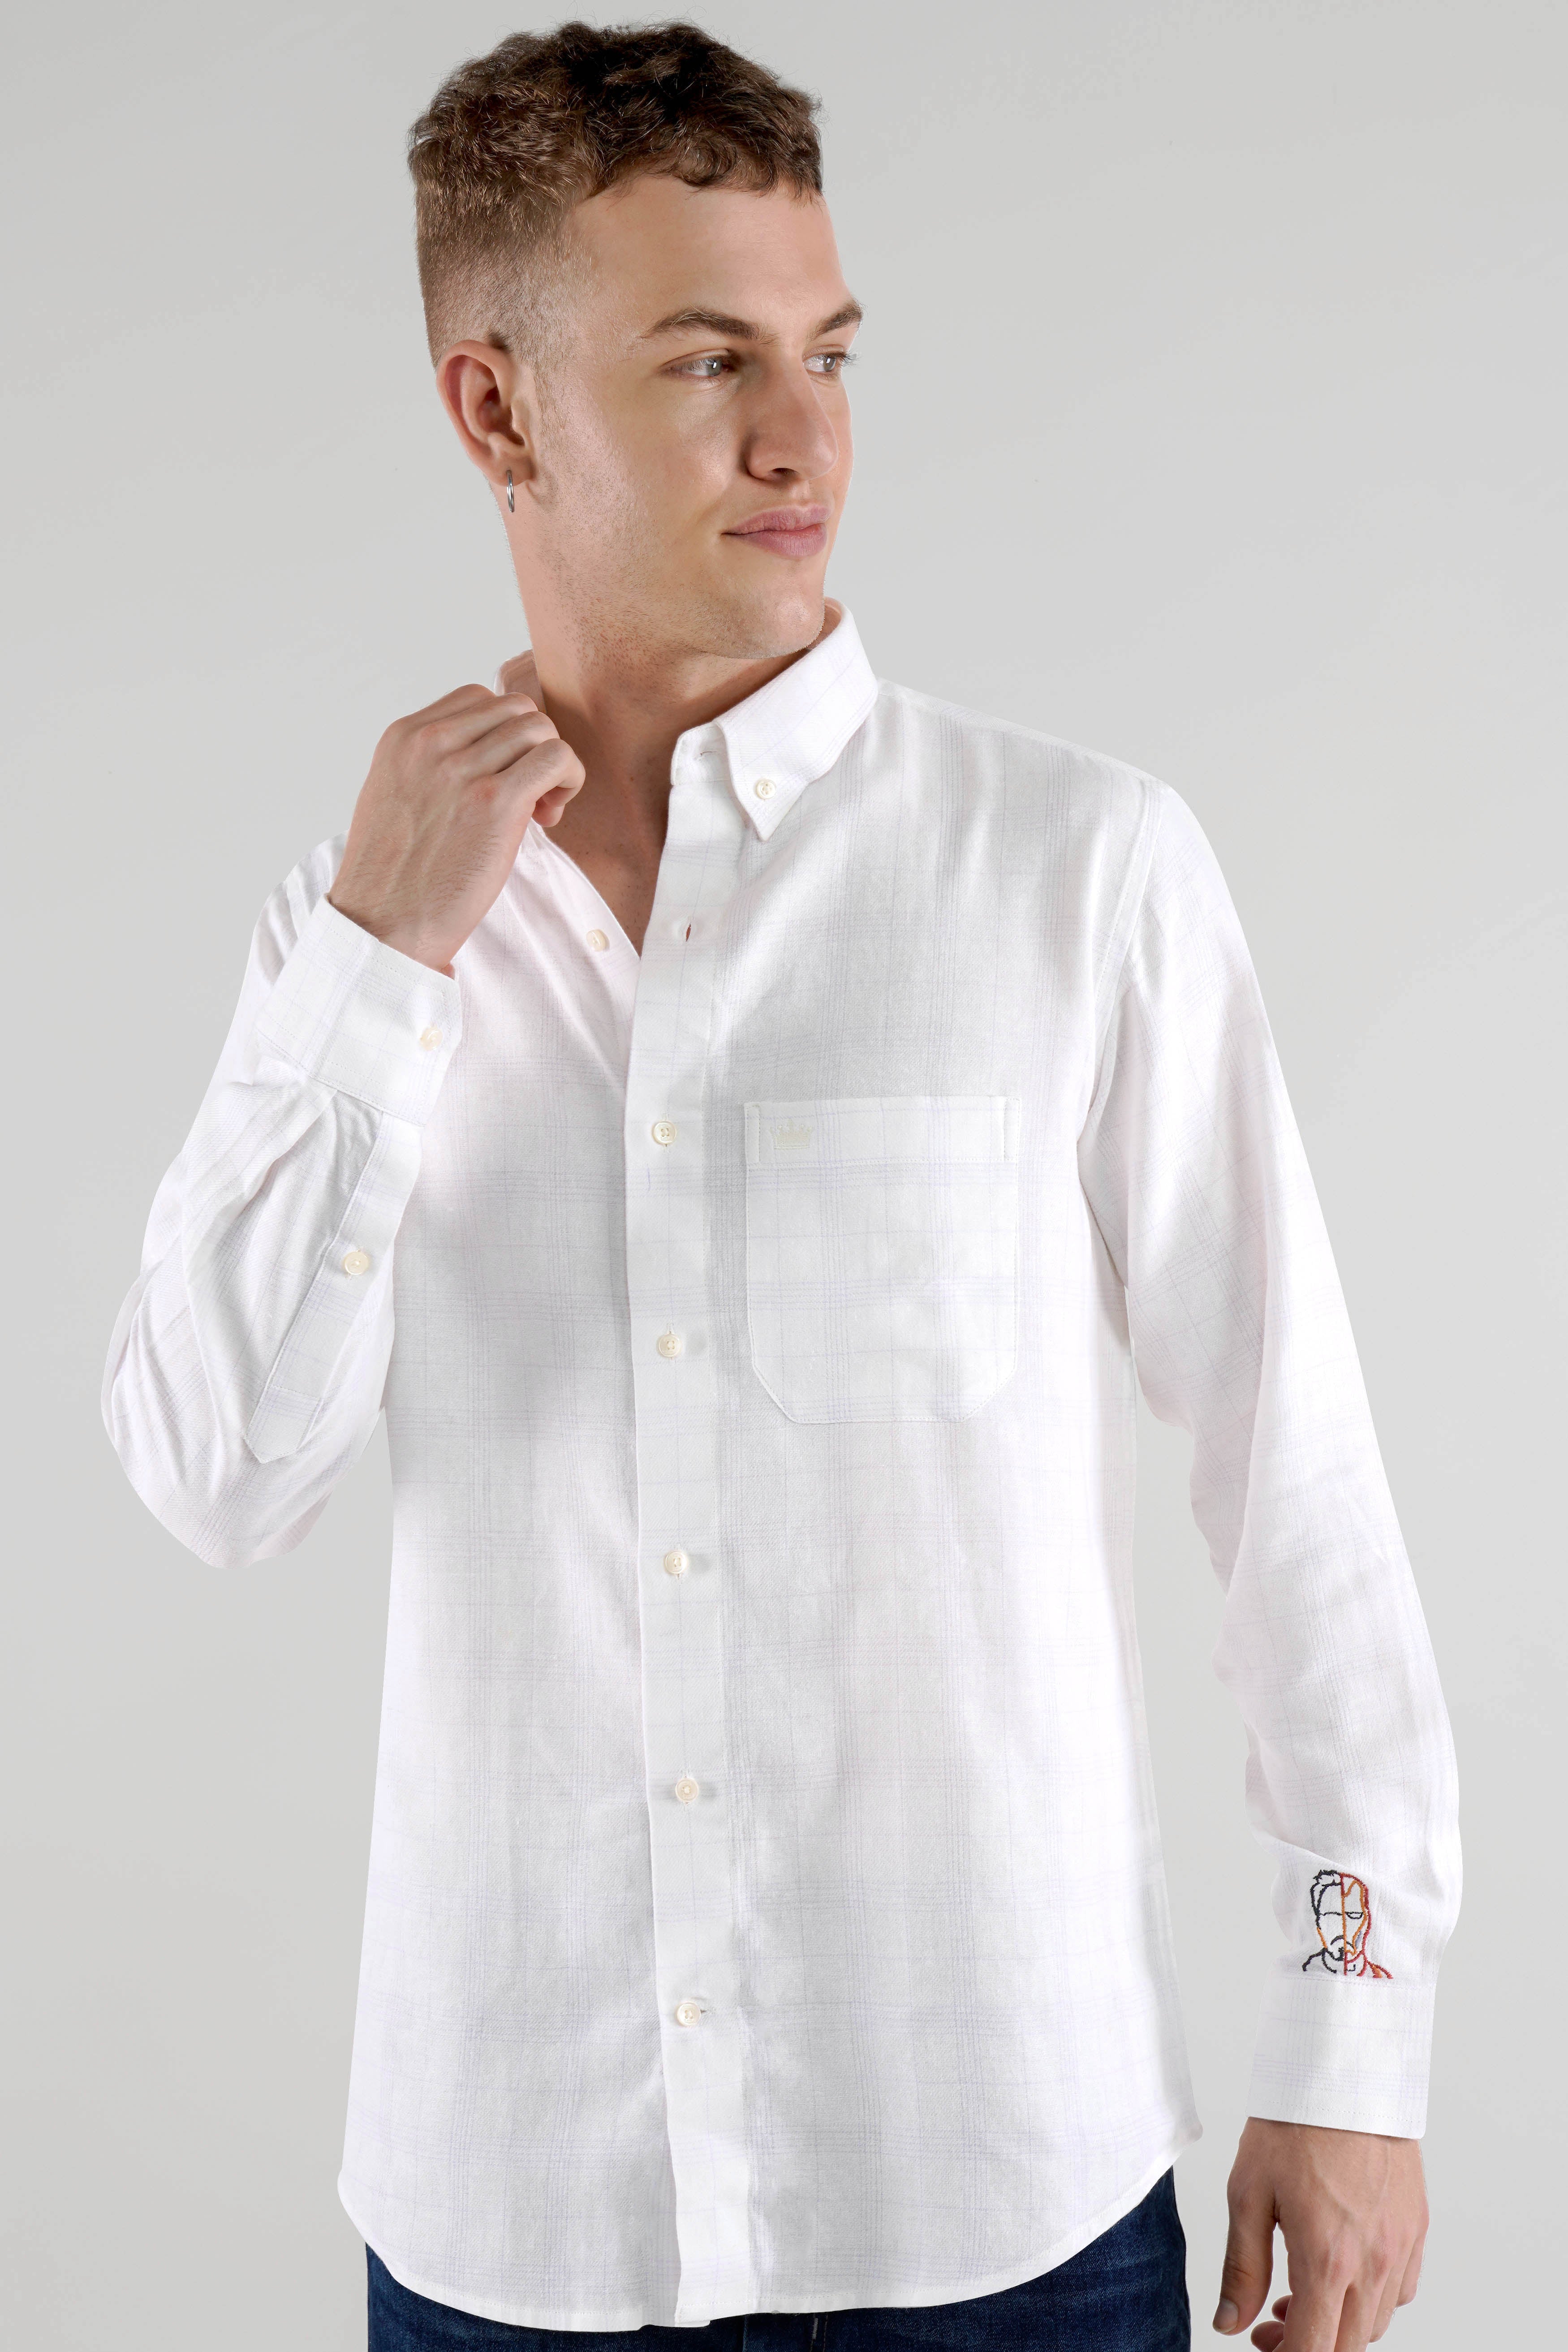 Bright white With Embroidered work Twill Subtle Plaid Premium Cotton Designer Shirt